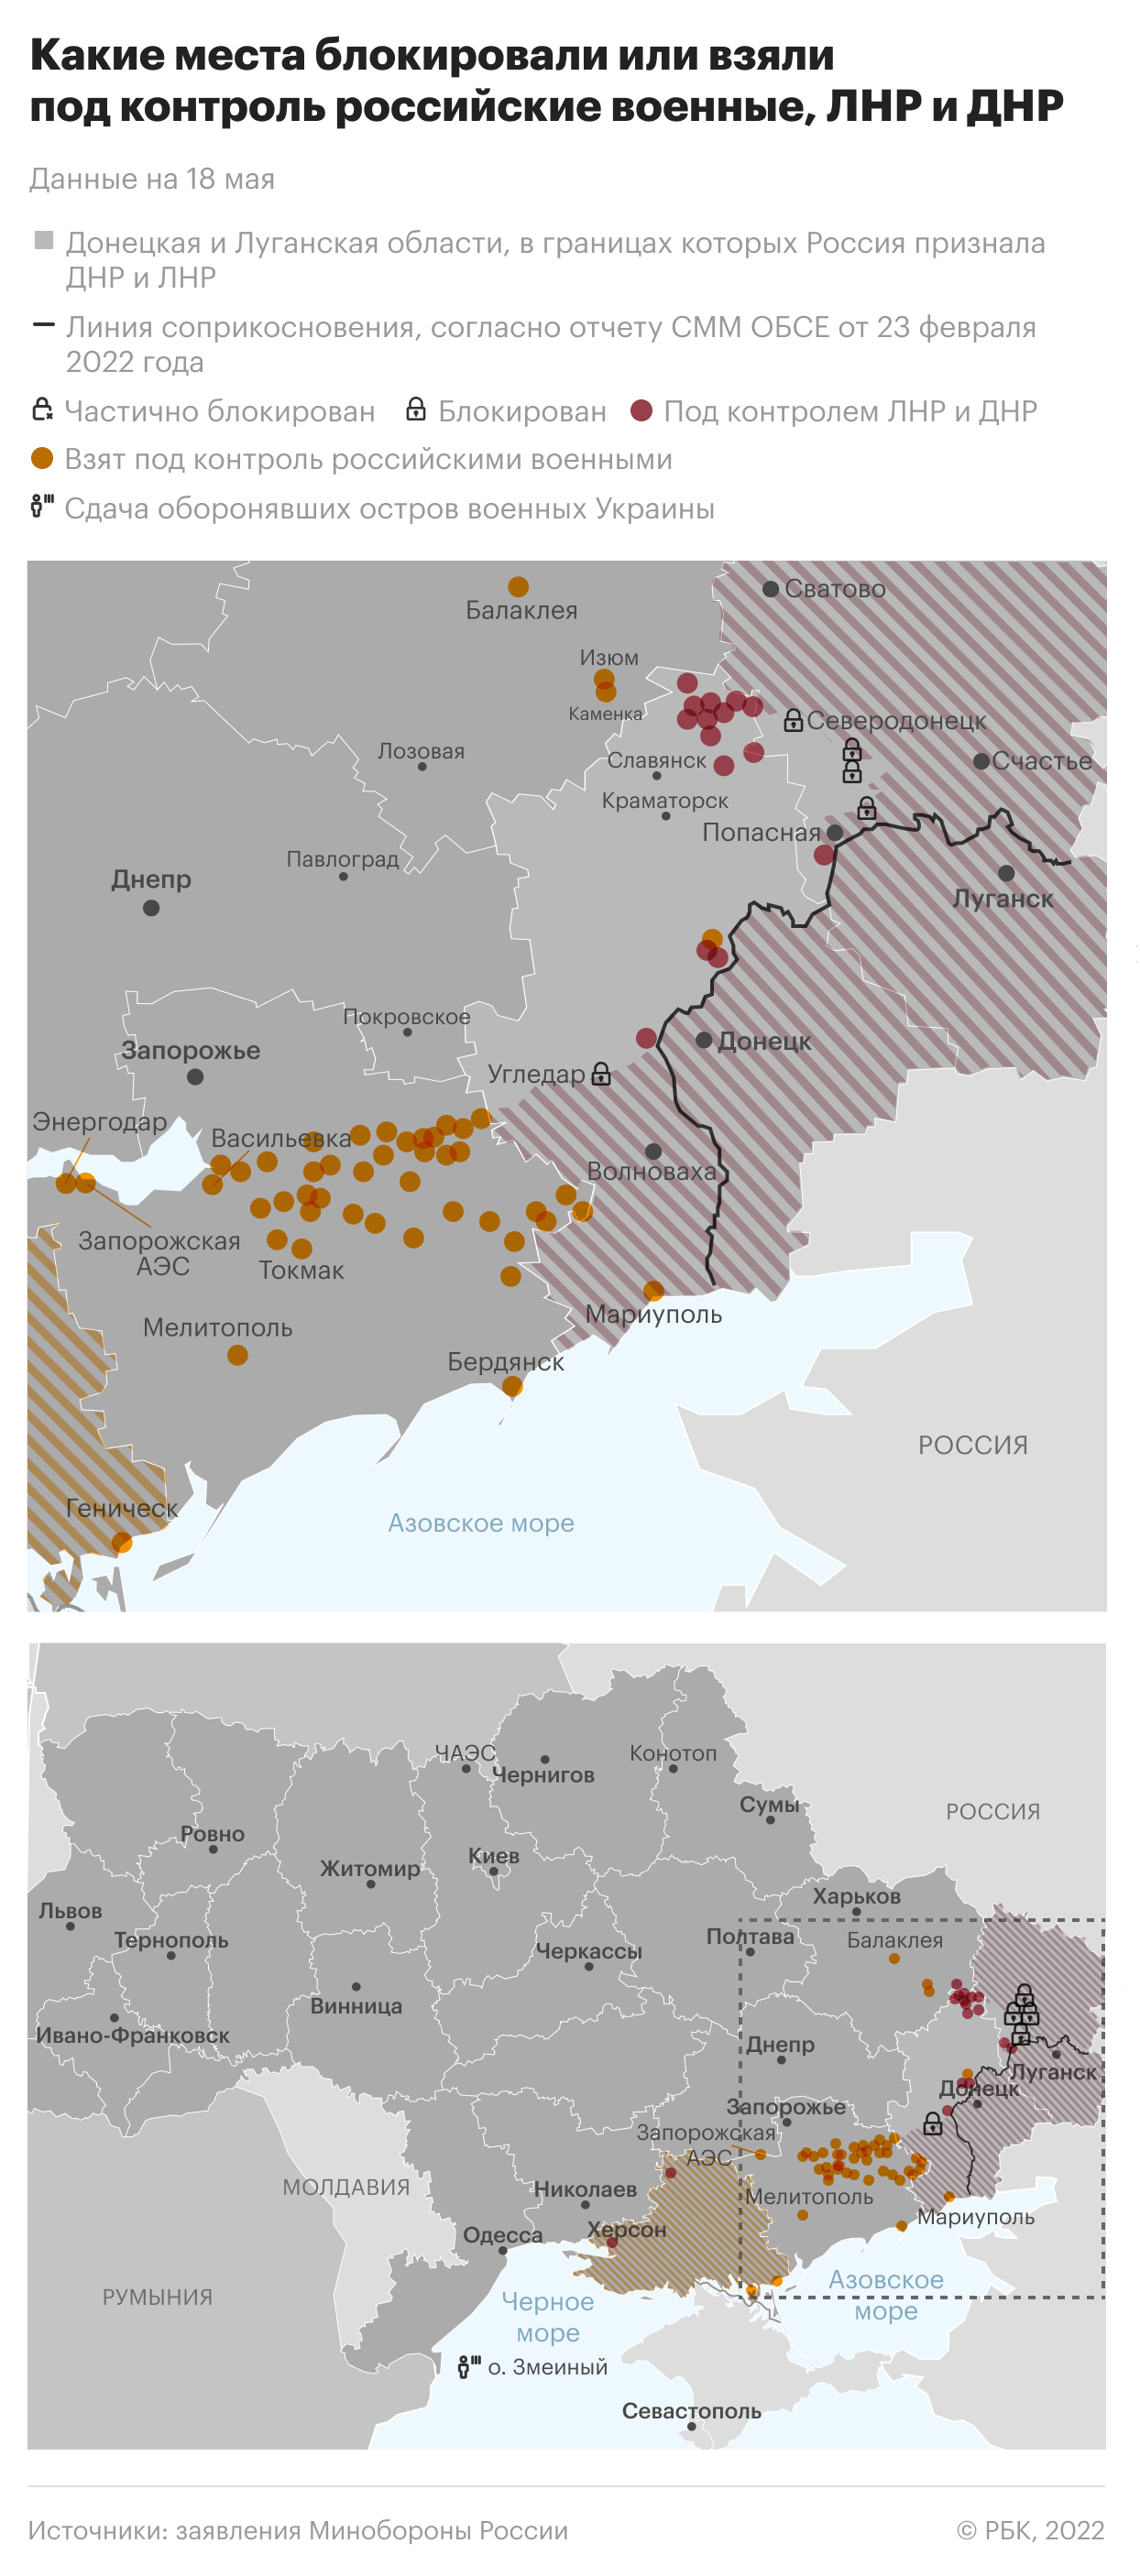 Глава ДНР счел более половины домов в Мариуполе подлежащими сносу"/>













